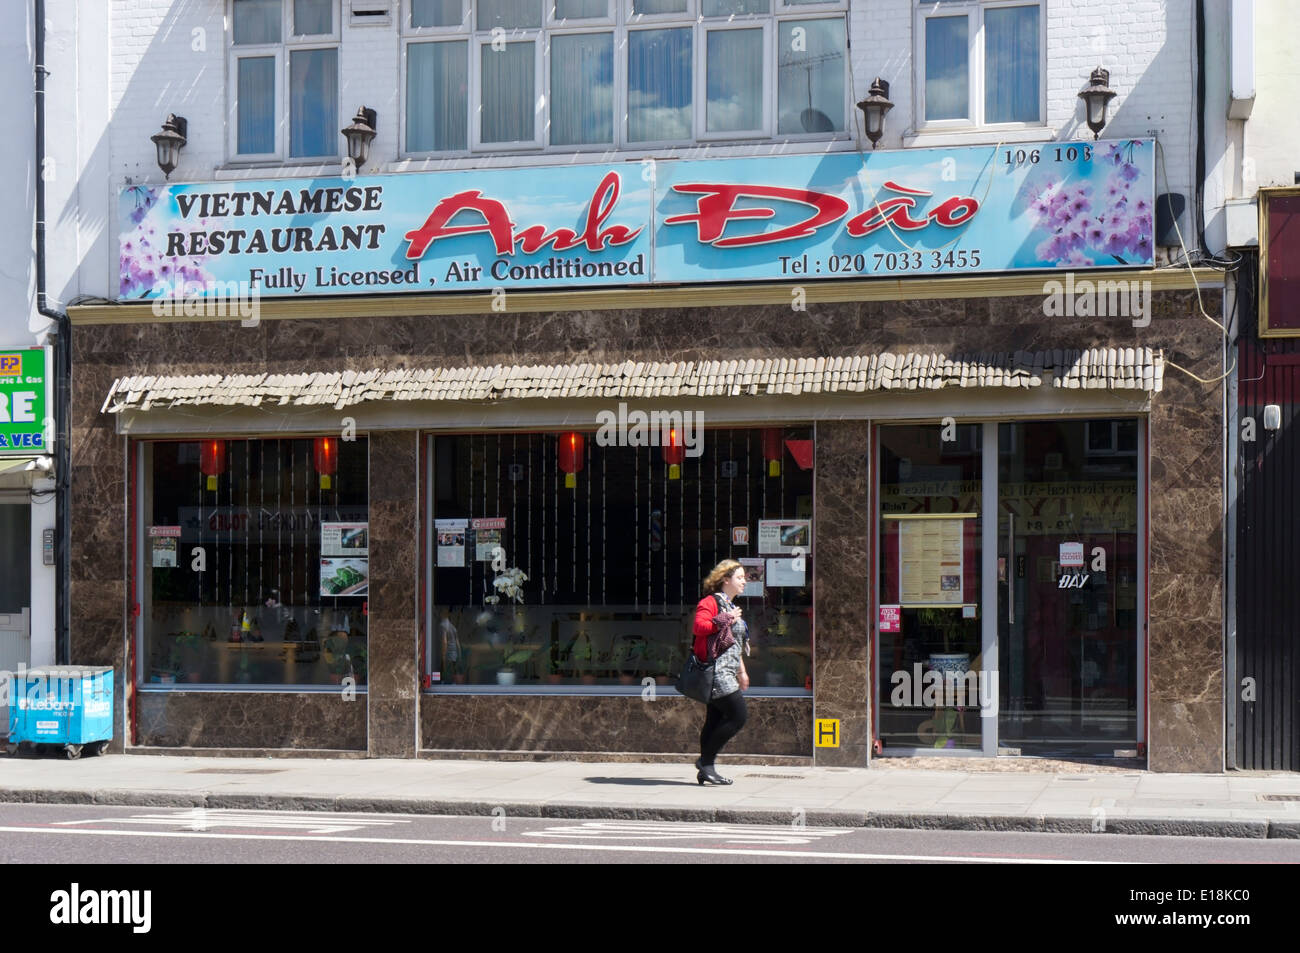 L'Anh Dào restaurant vietnamien de Kingsland Road, East London. Banque D'Images